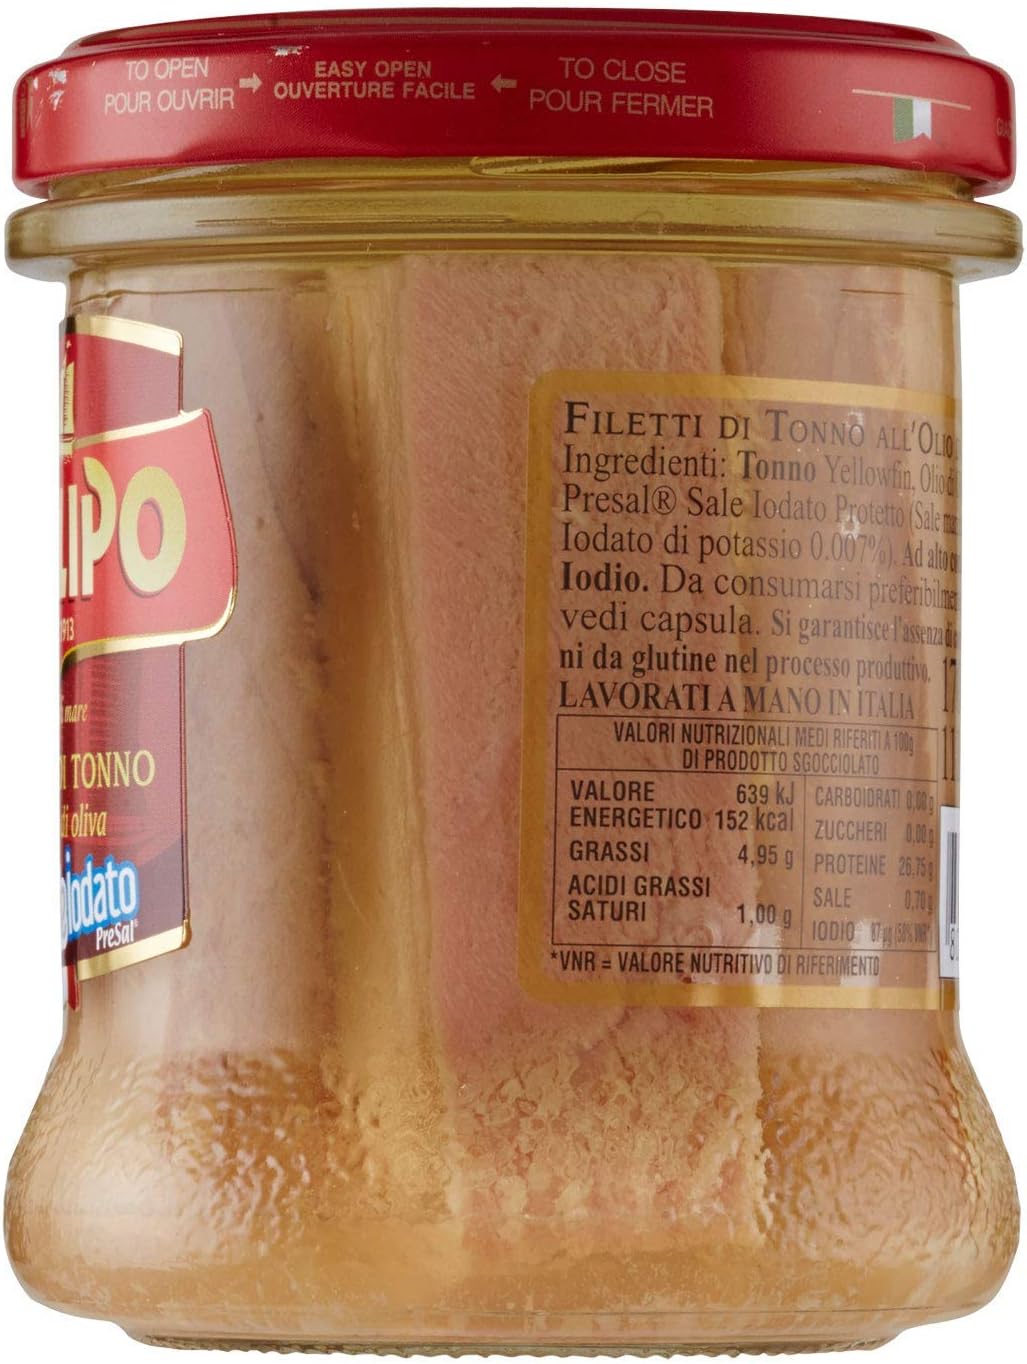 Callipo Filetti di Tonno all'olio di oliva 170g (Promozione Sales & Service) Pack C